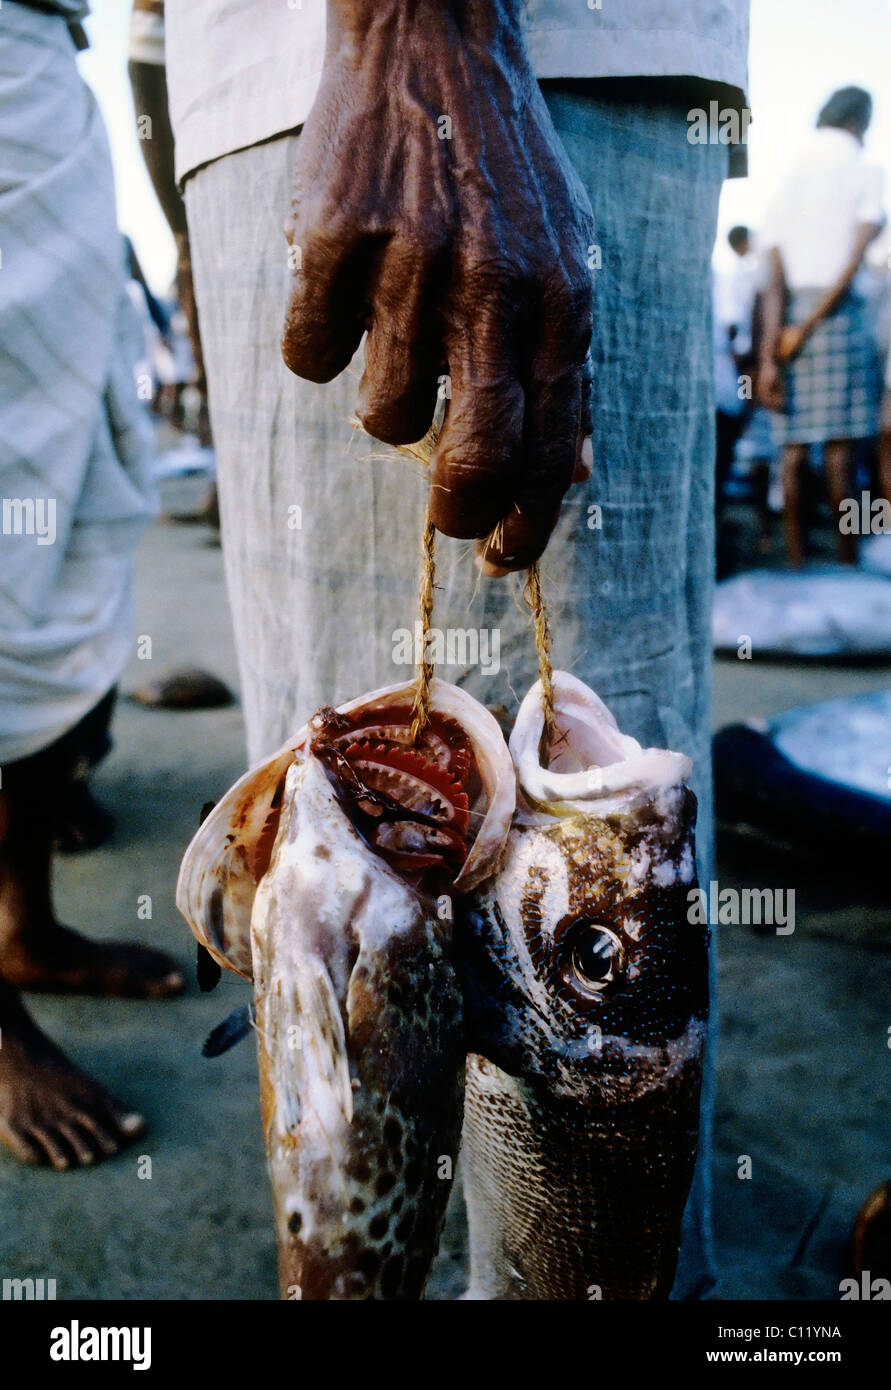 Brown parte de un antiguo cingalés hombre sujetando dos compraron pescado en una cadena, Beruwala, Sri Lanka, Ceilán, el sur de Asia, Asia Foto de stock